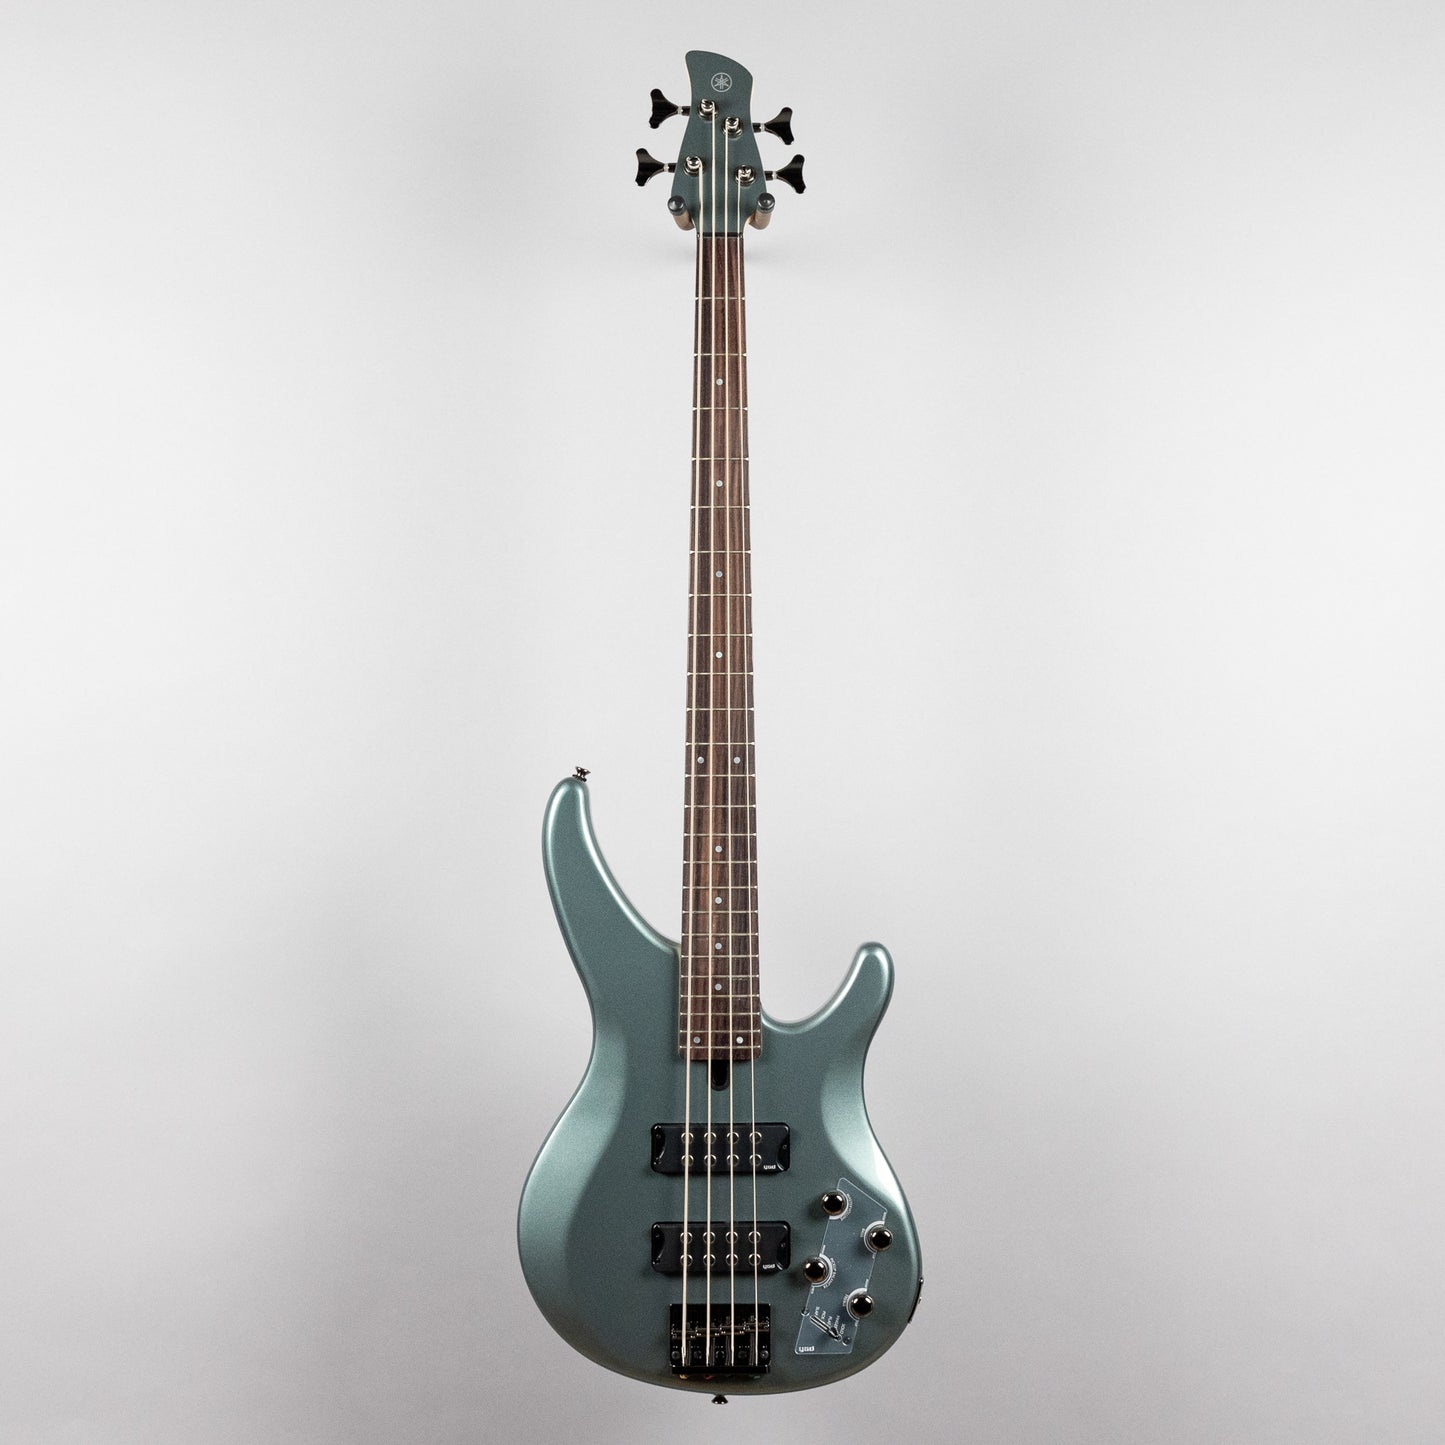 Yamaha TRBX304 4-String Bass Guitar in Mist Green